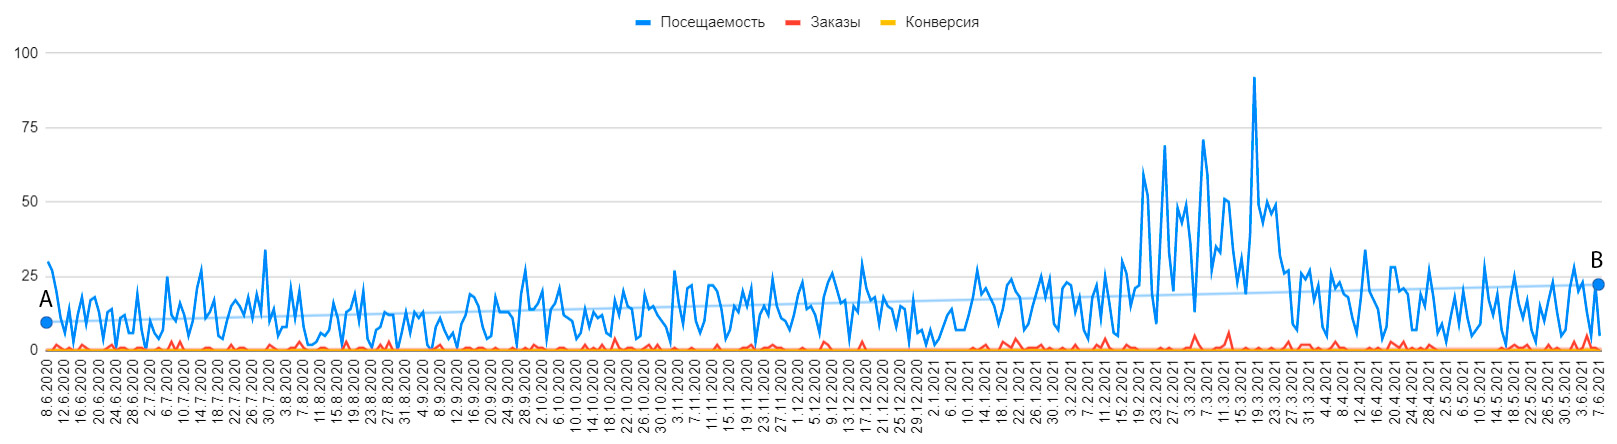 Пример динамики посещаемости веб-сервиса МеталВал.ру с реализованным алгоритмом подготовки текстов